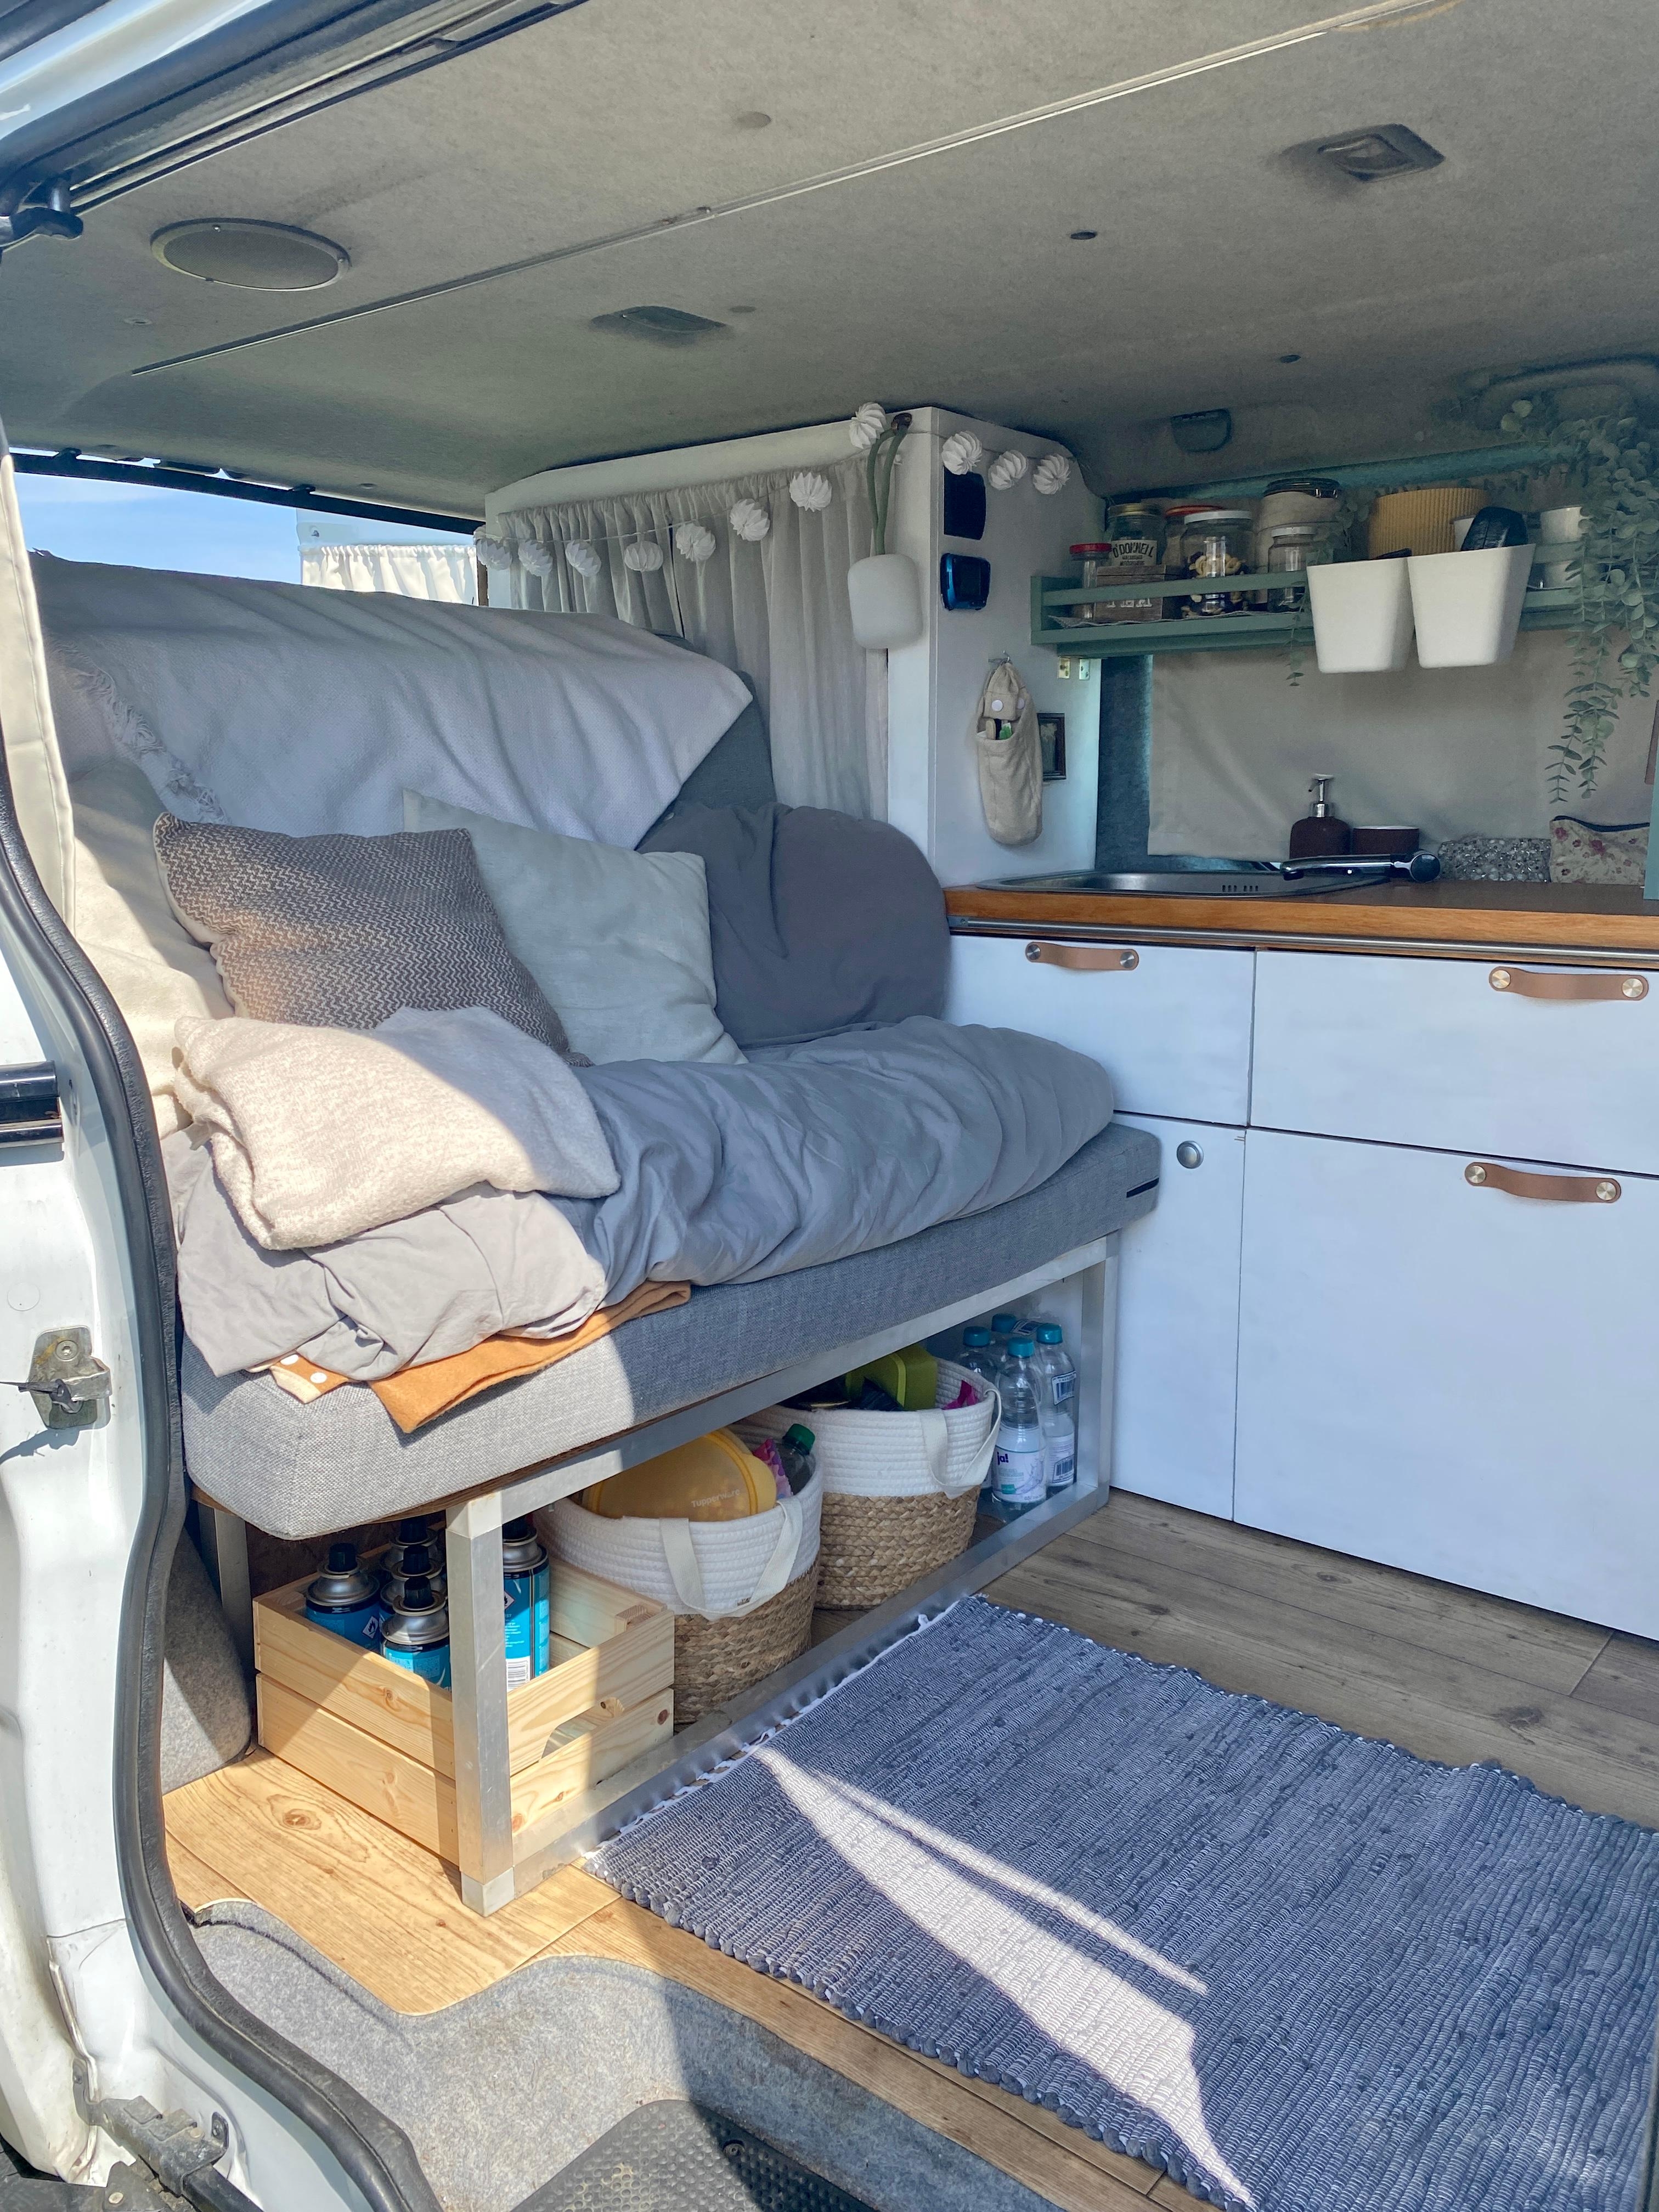 Unser Wohn- und Schlafzimmer sowie Küche für unterwegs 🚐 #vanlife #camper #boho #cozy #microcamper #outdoorliving 